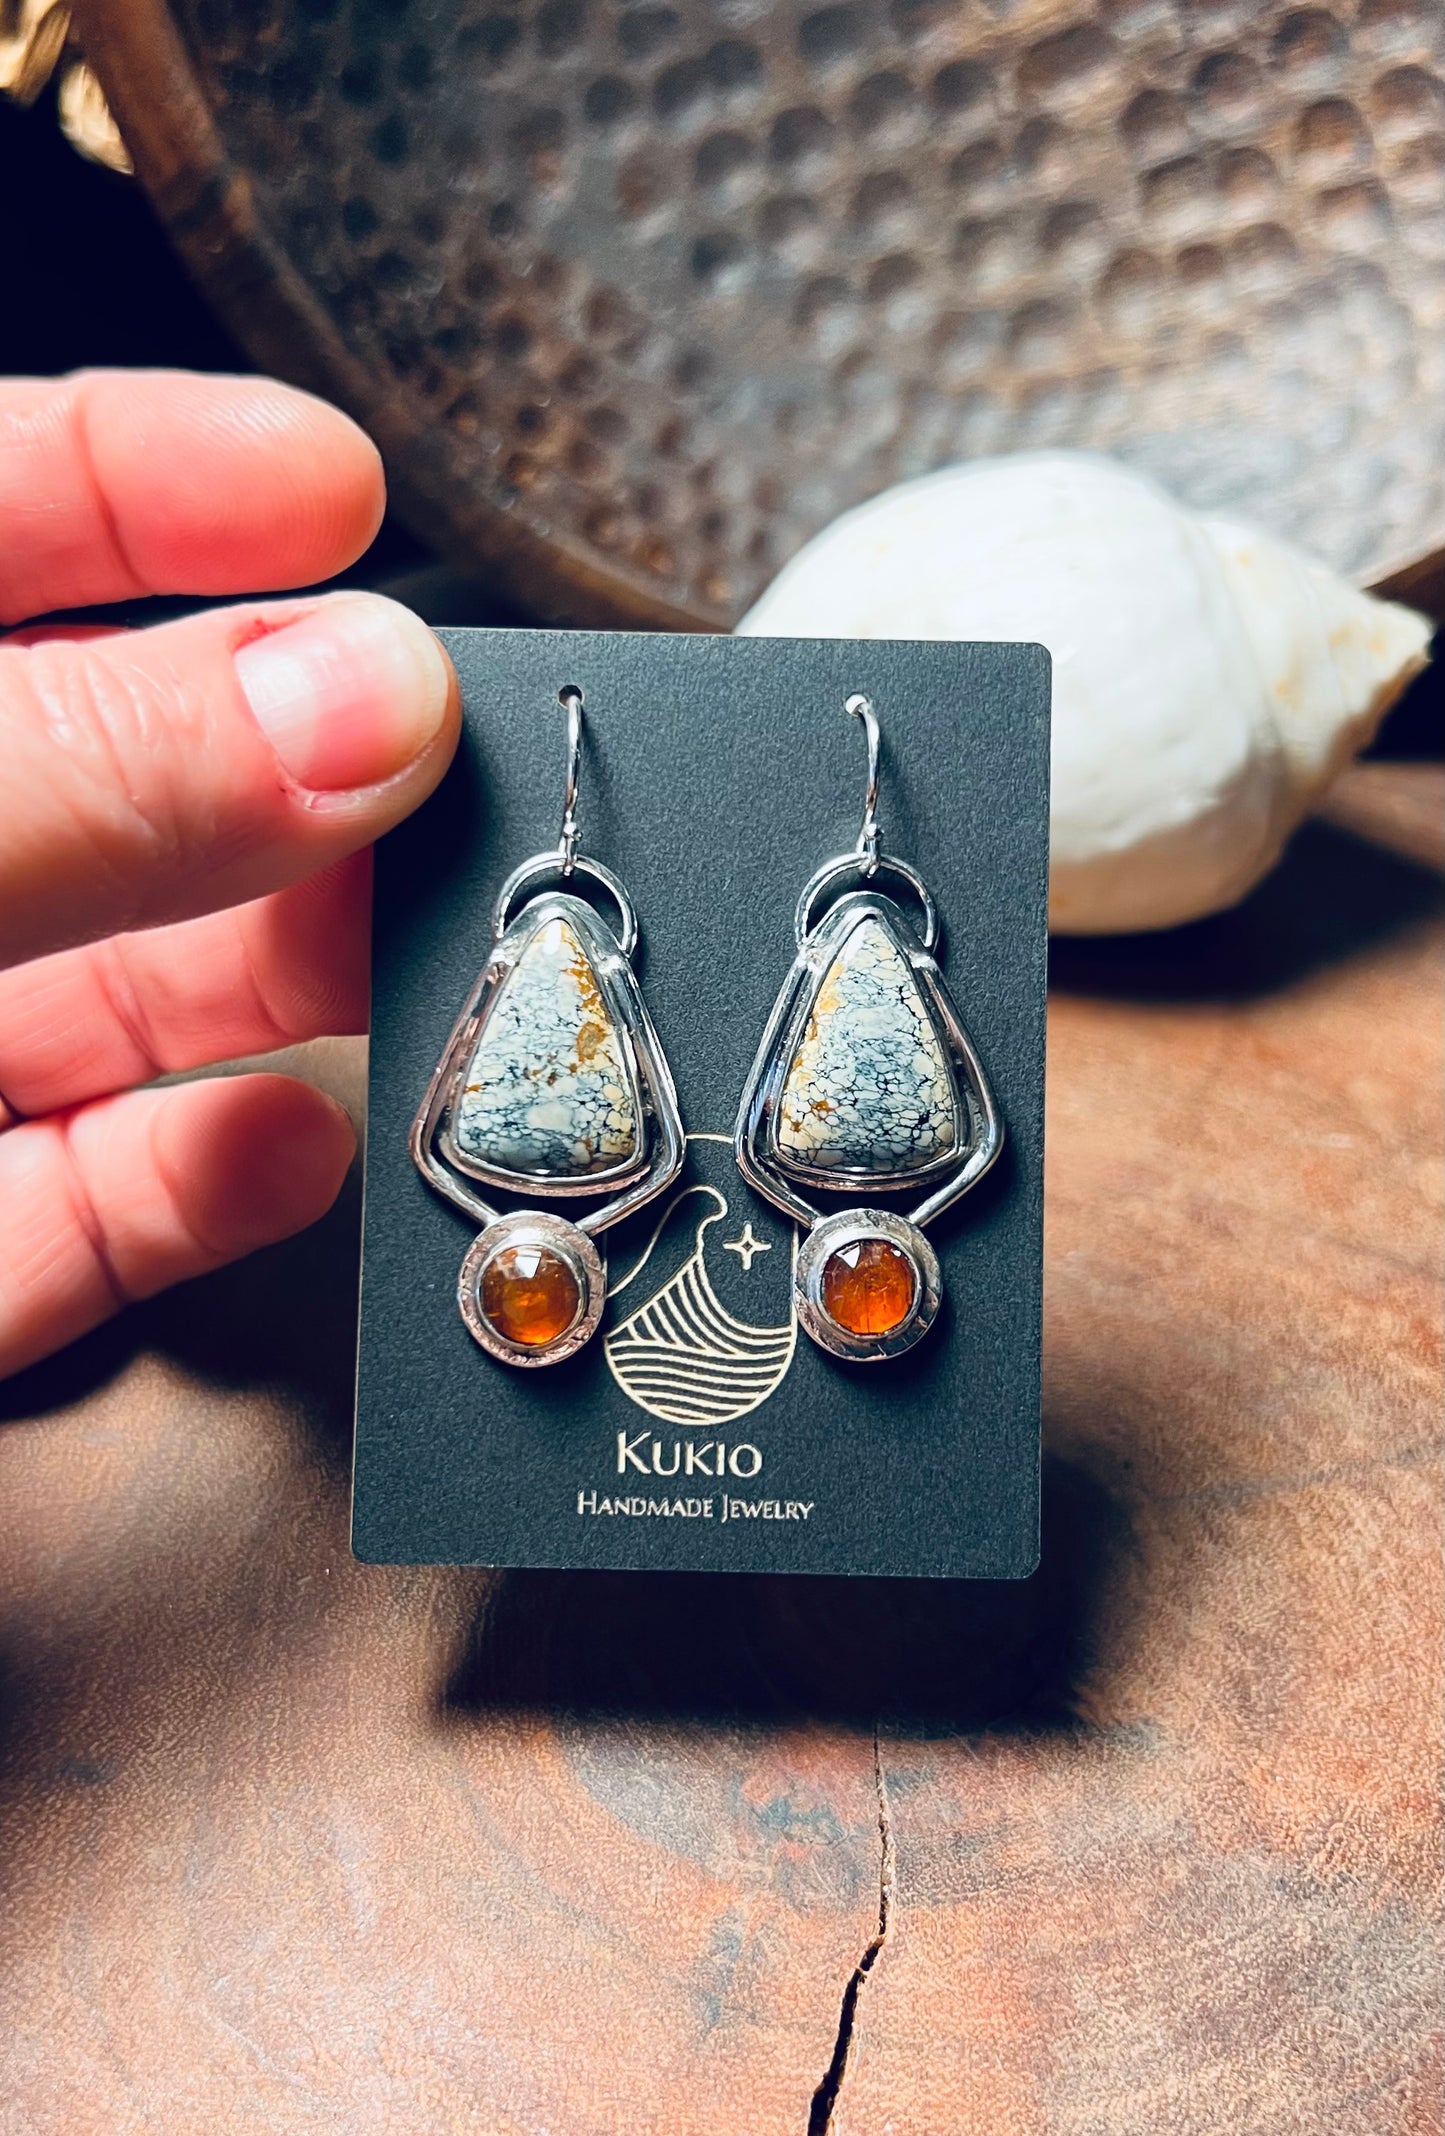 Ivory Creek Variscite and Orange Kyanite Earrings